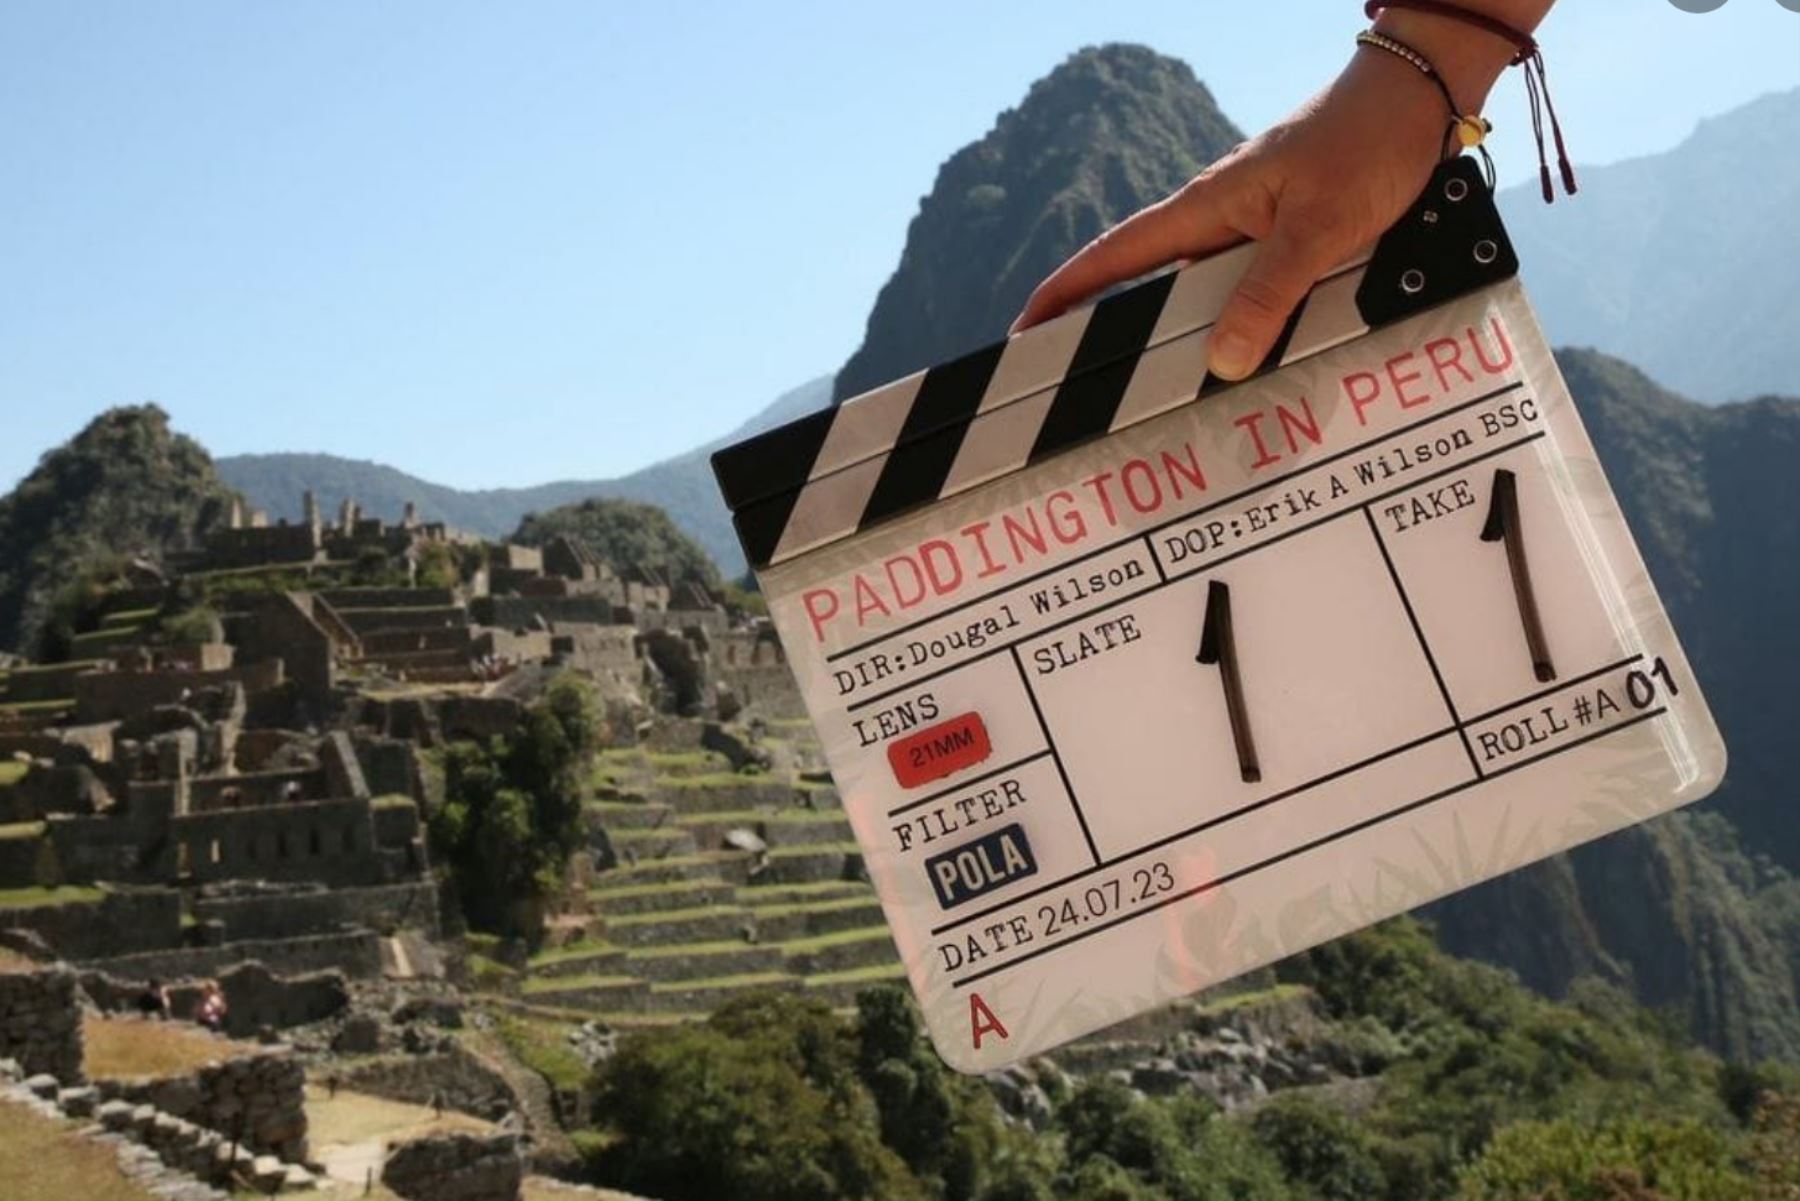 La tercera entrega de la saga, "Paddington en Perú" llegará en el 2024. Foto: Internet